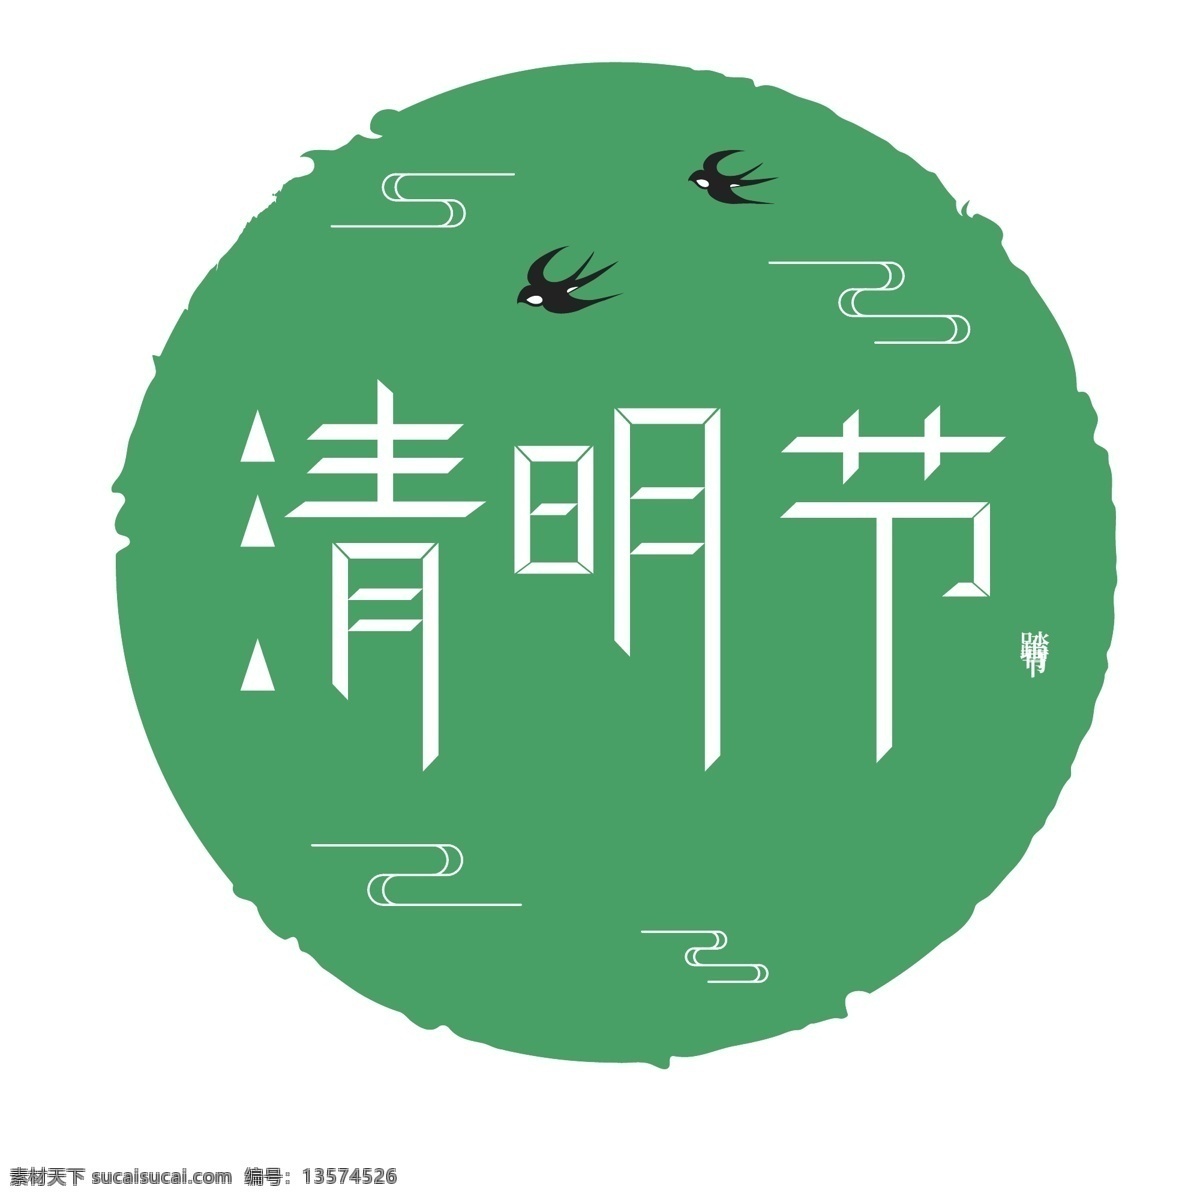 原创 中国 传统节日 清明节 踏青节 标题框 清明 踏青 清明字体